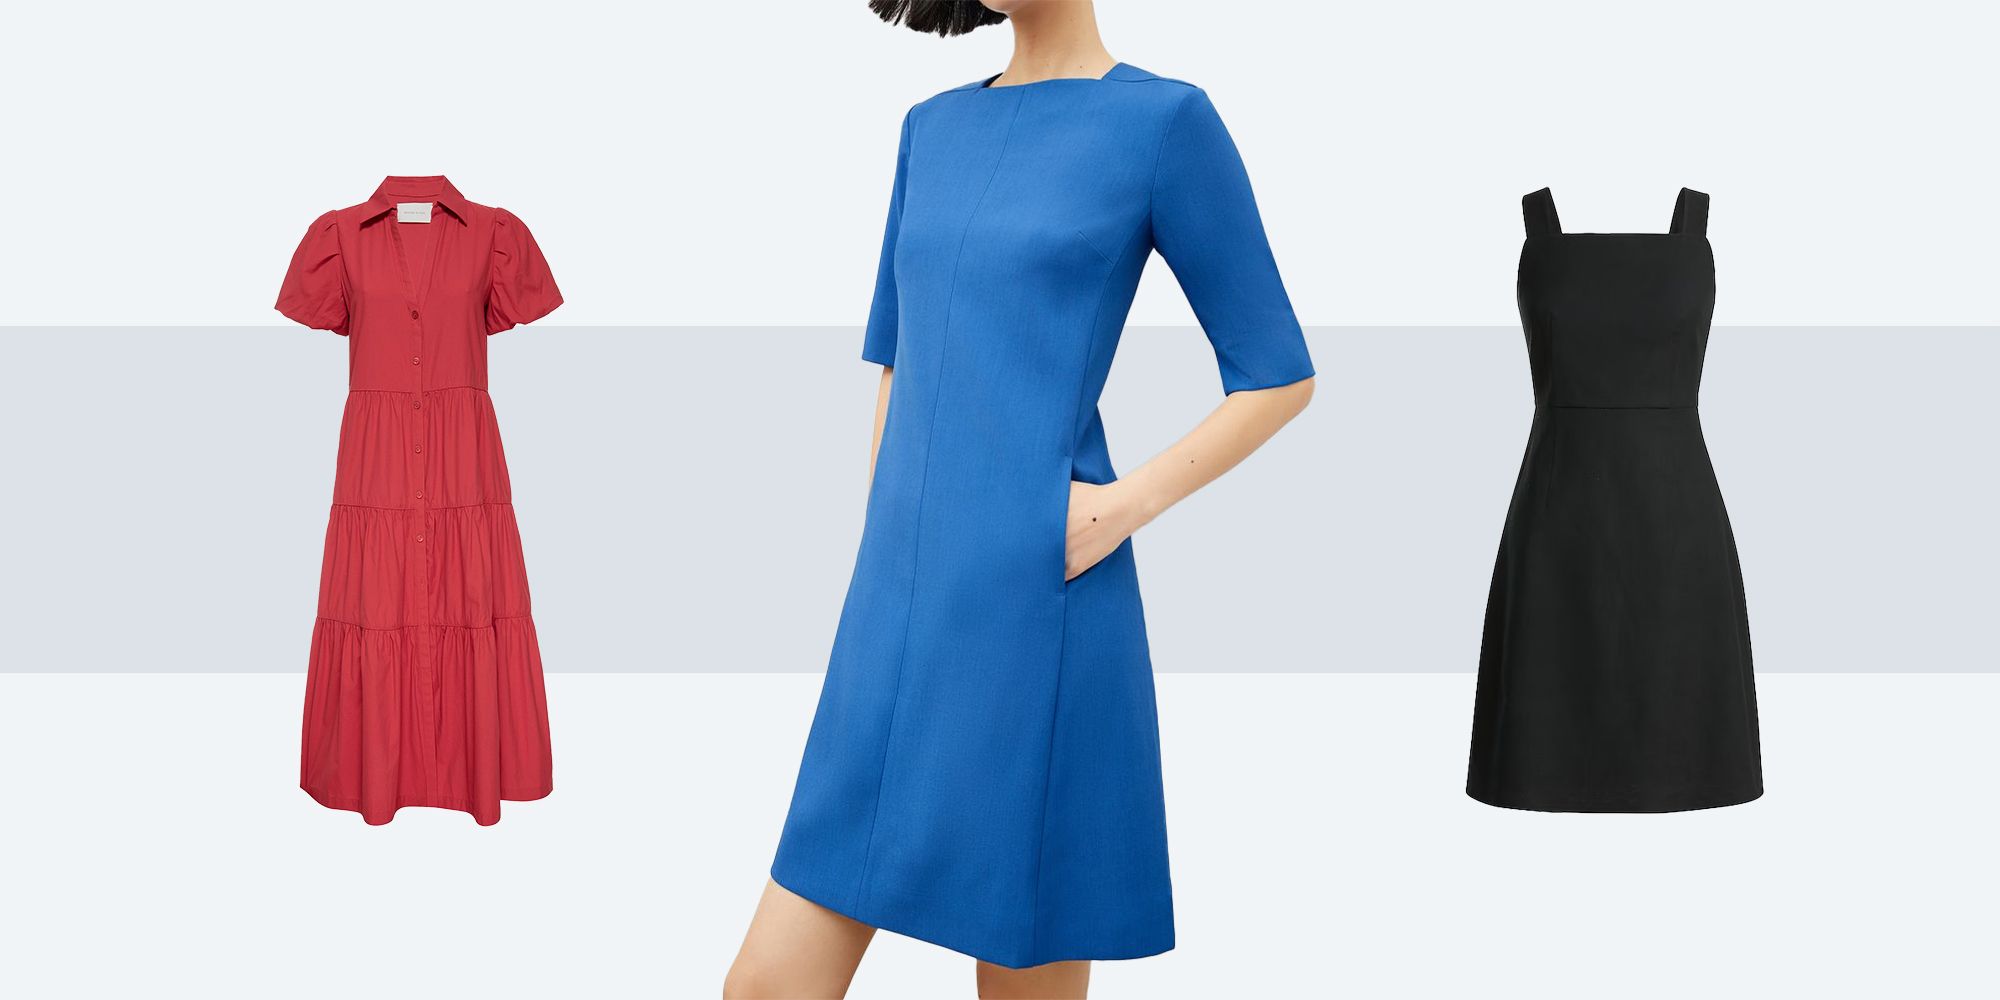 Dresses for Women | Best Women's Dresses Online - Lulus